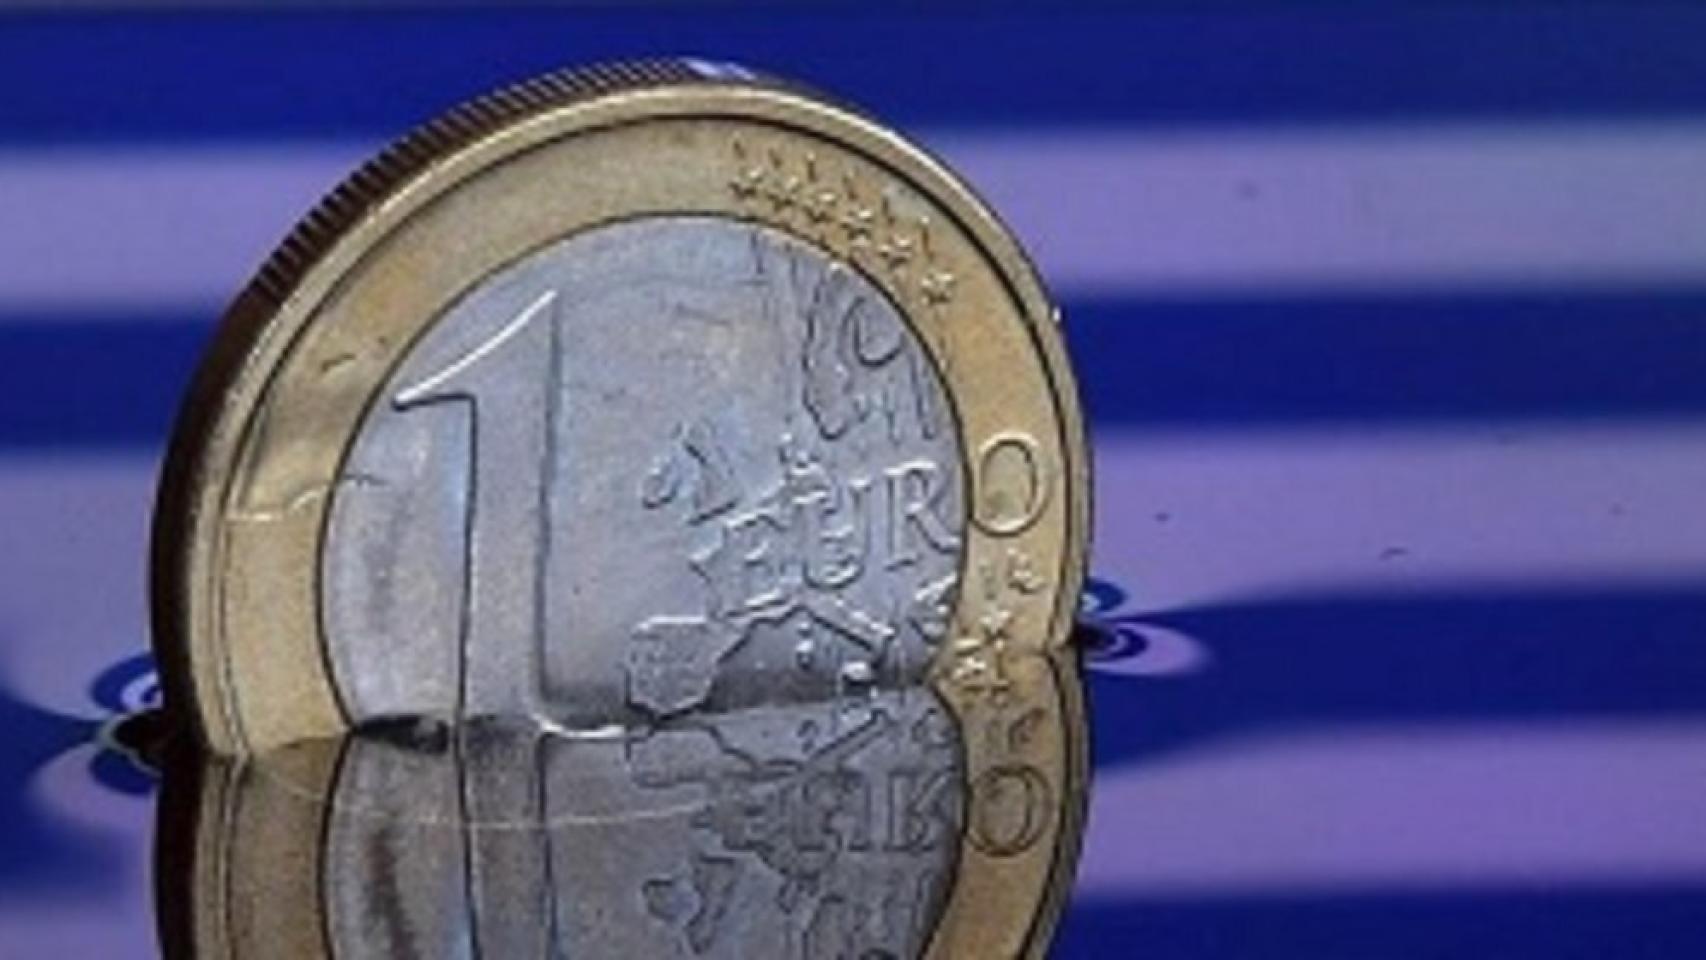 Grecia seguirá bajo supervisión tras el rescate, dice presidente de Eurogrupo